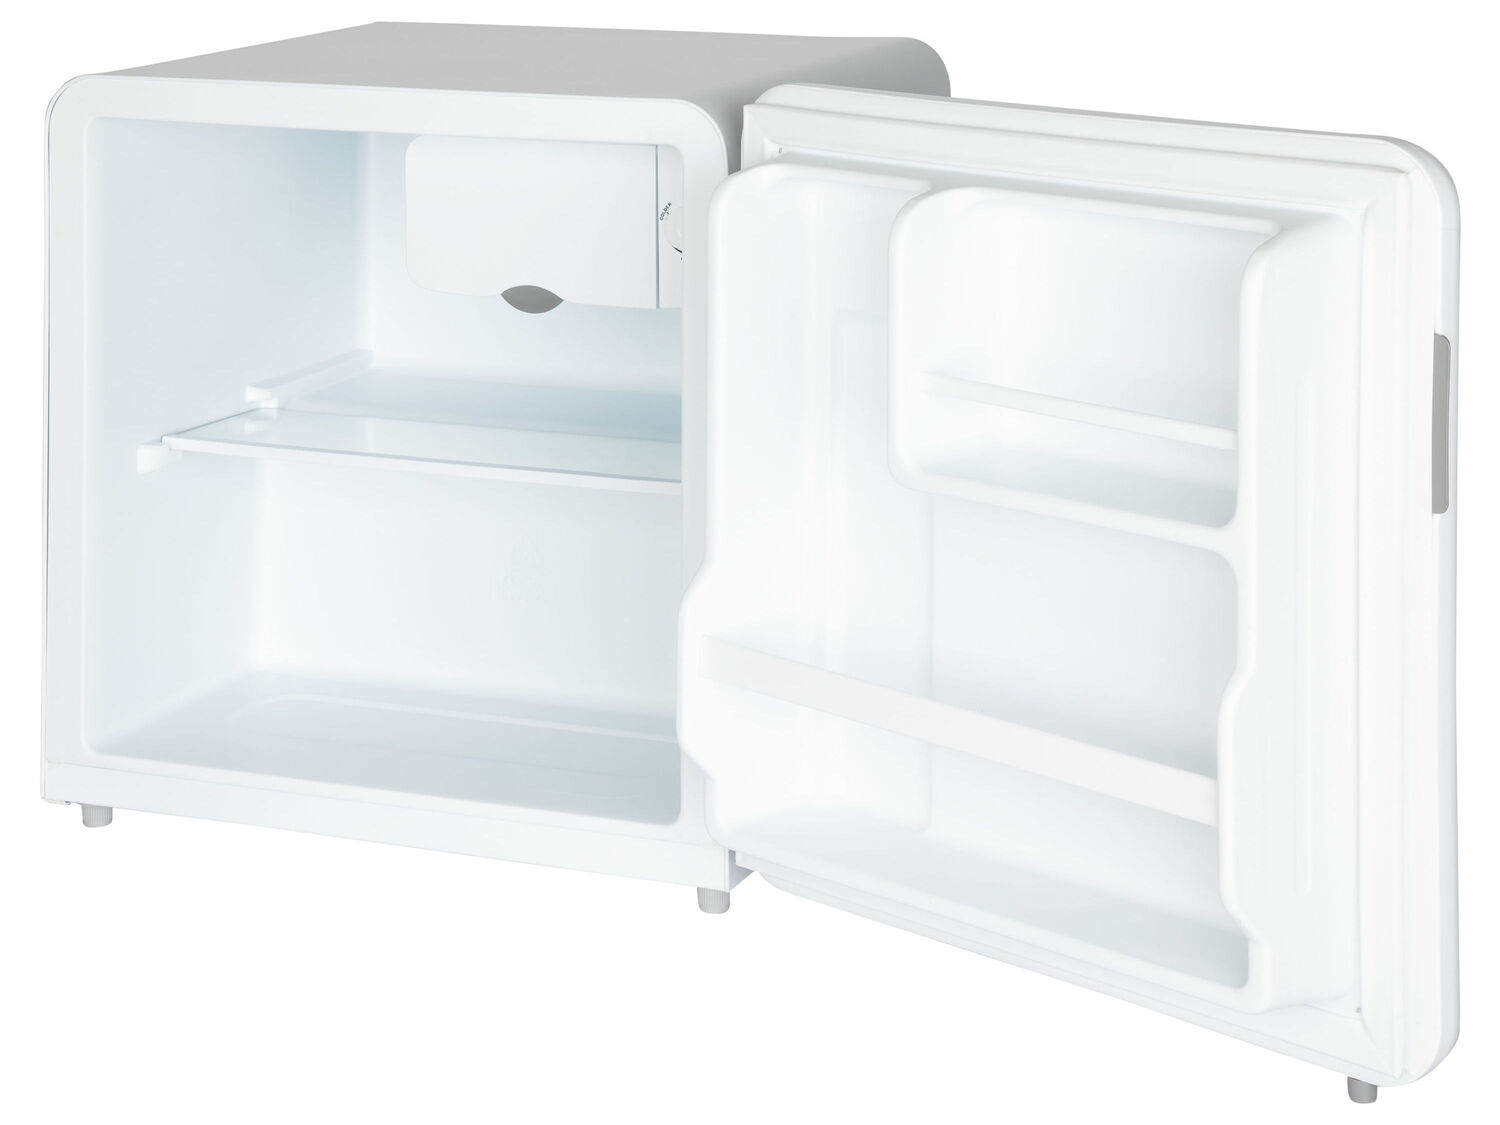 Mini frigo bianco Comfee-grigio, prezzo 139.00 &#8364; 
47 L 
- Design retr&ograve;
- ...